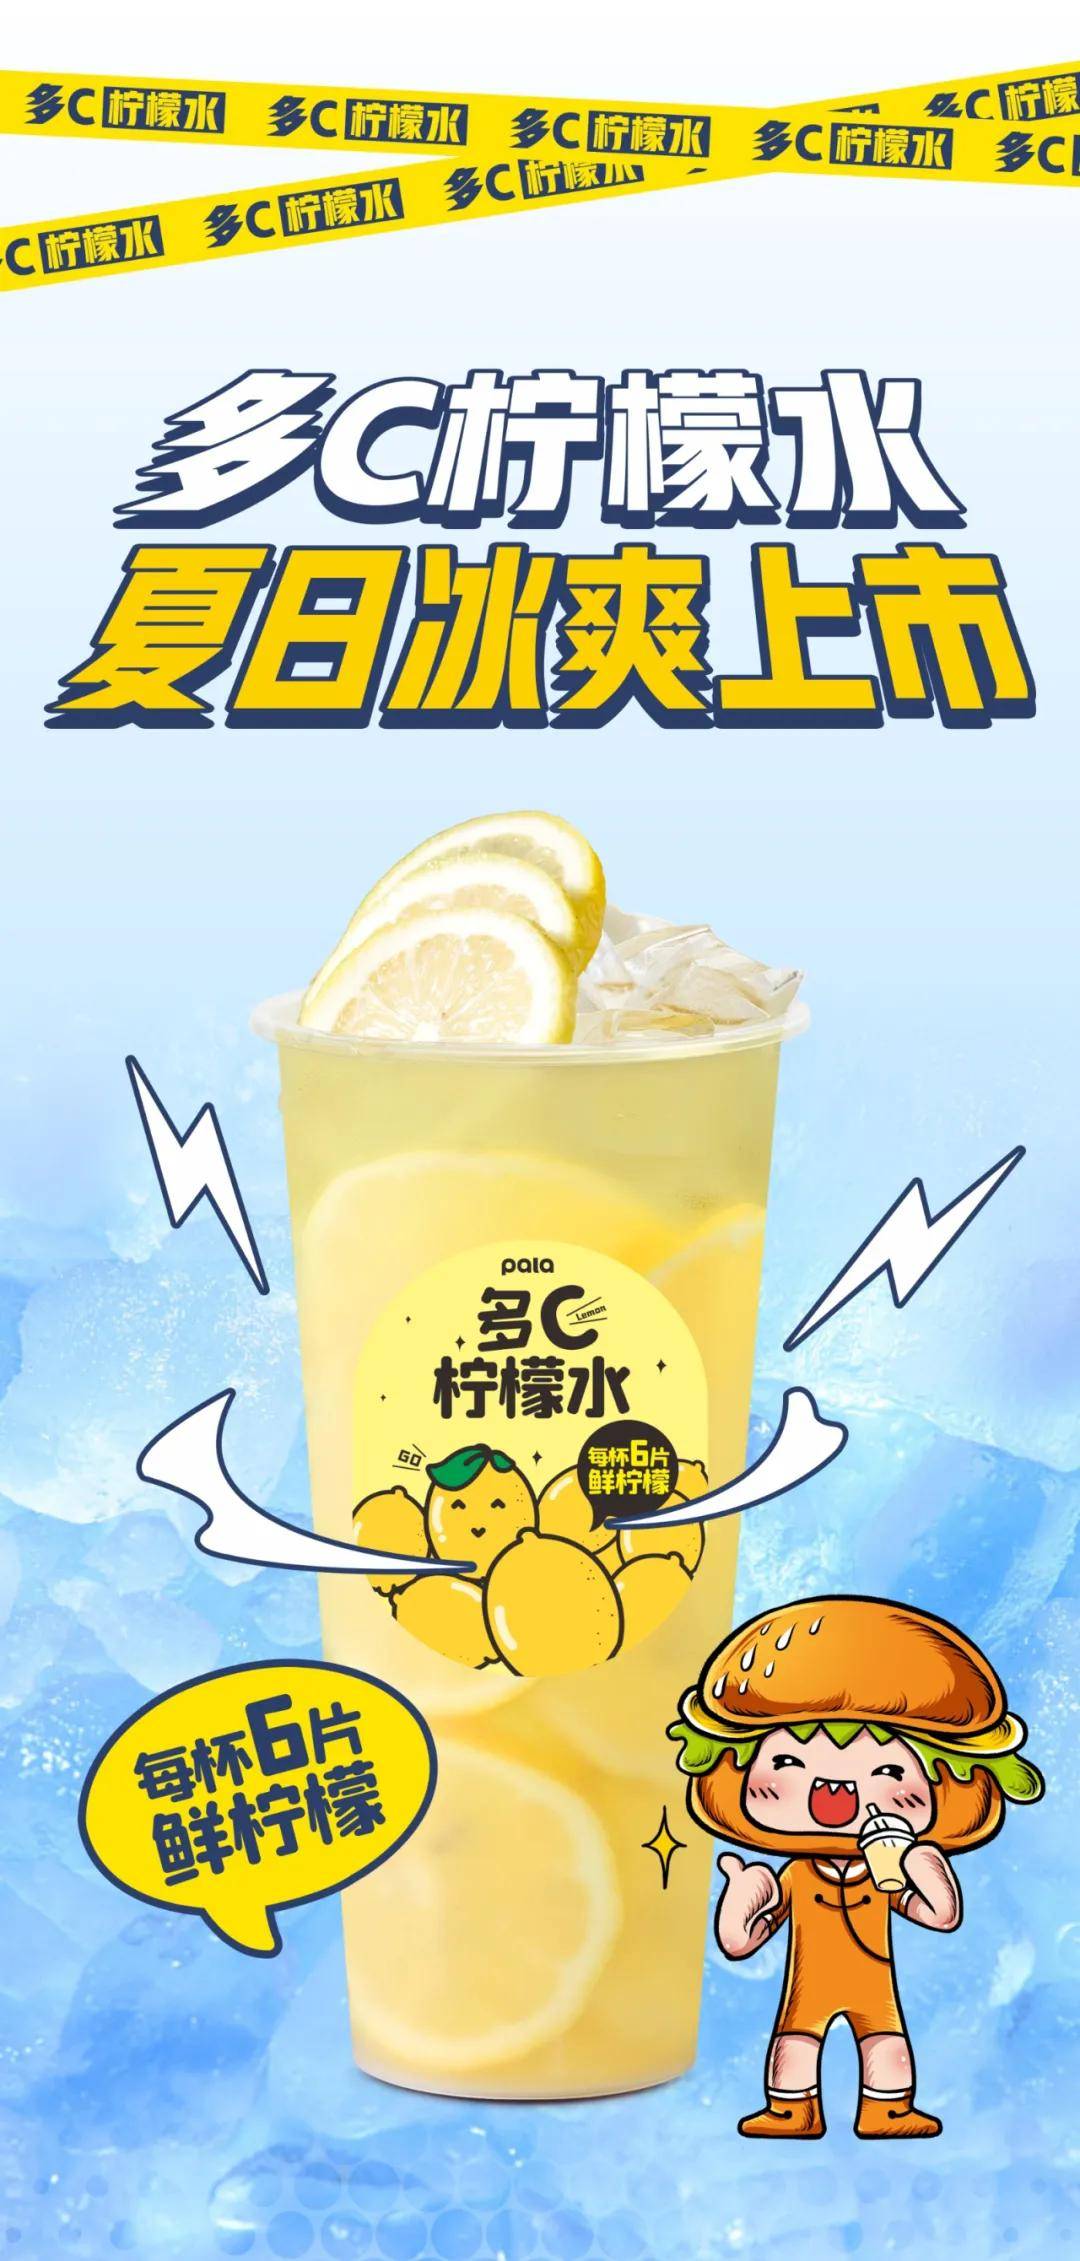 柠檬水广告图片大全图片